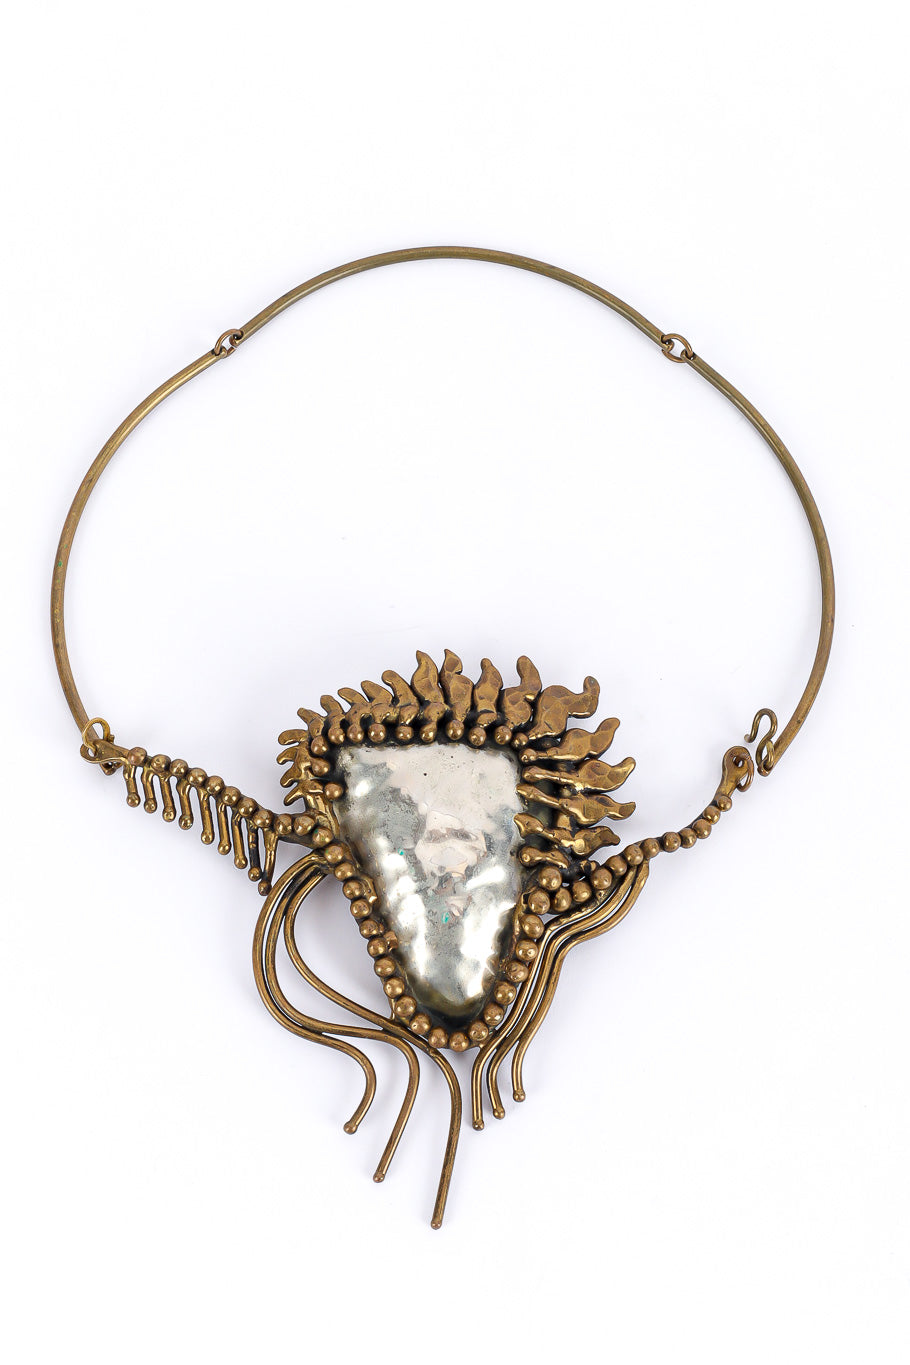 Unique mixed metal abstract vintage collar necklace flat lay loop @recessla